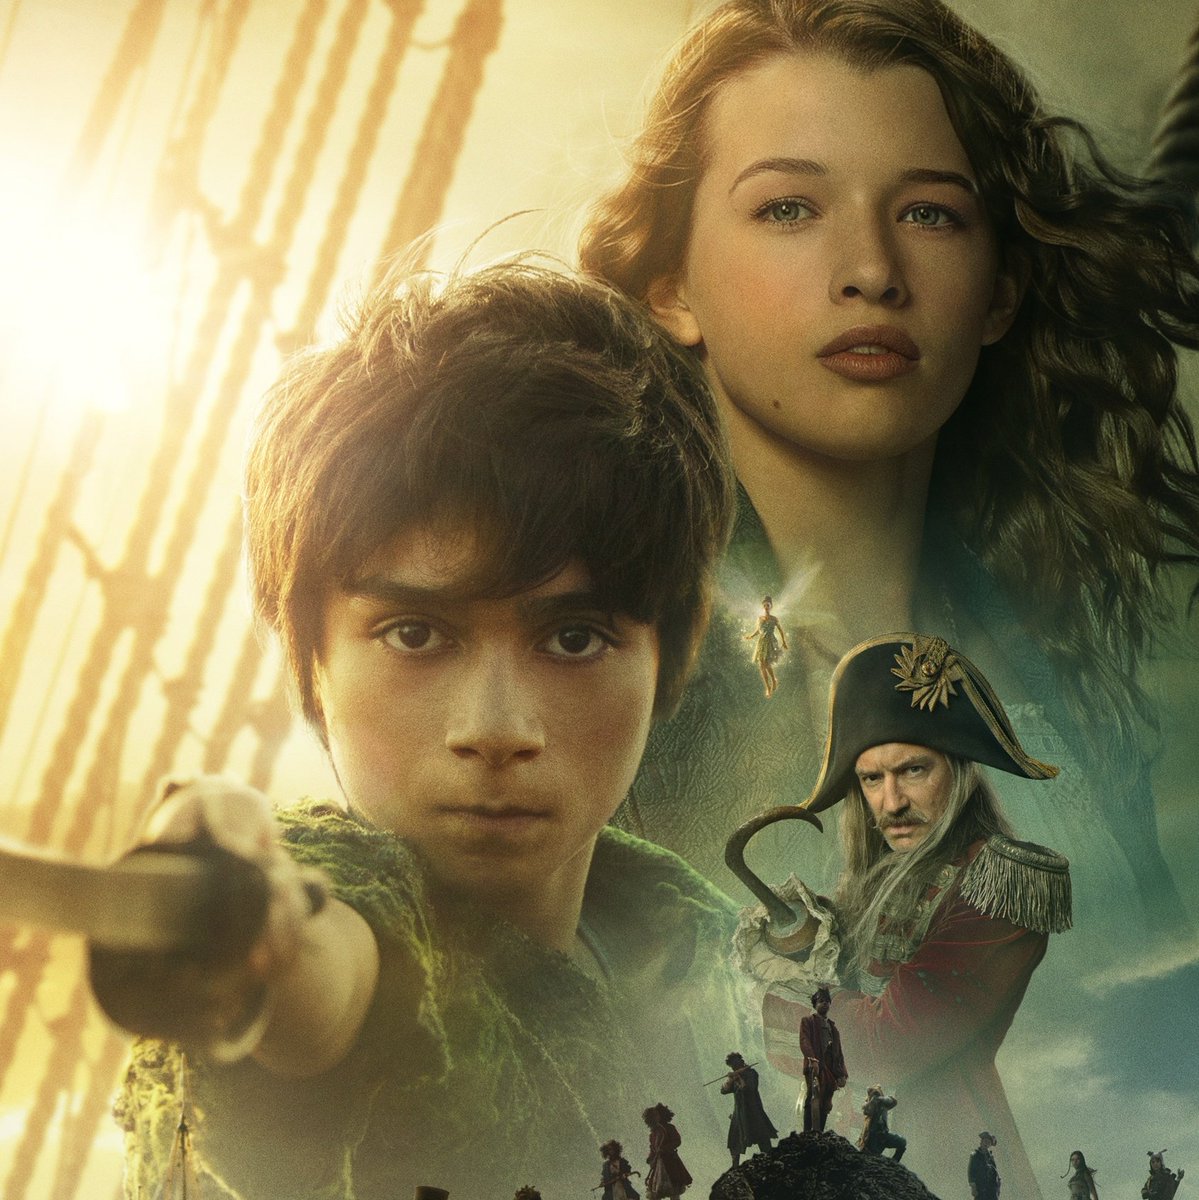 O Rotten Tomatoes removeu a aprovação do público de 'Peter Pan & Wendy' após o filme ser bombardeado por racistas e i*ceis que vinham desesperadamente tentando baixar a nota nos últimos dias.

#PeterPanAndWendy é o segundo filme de streaming mais assistido nos EUA.